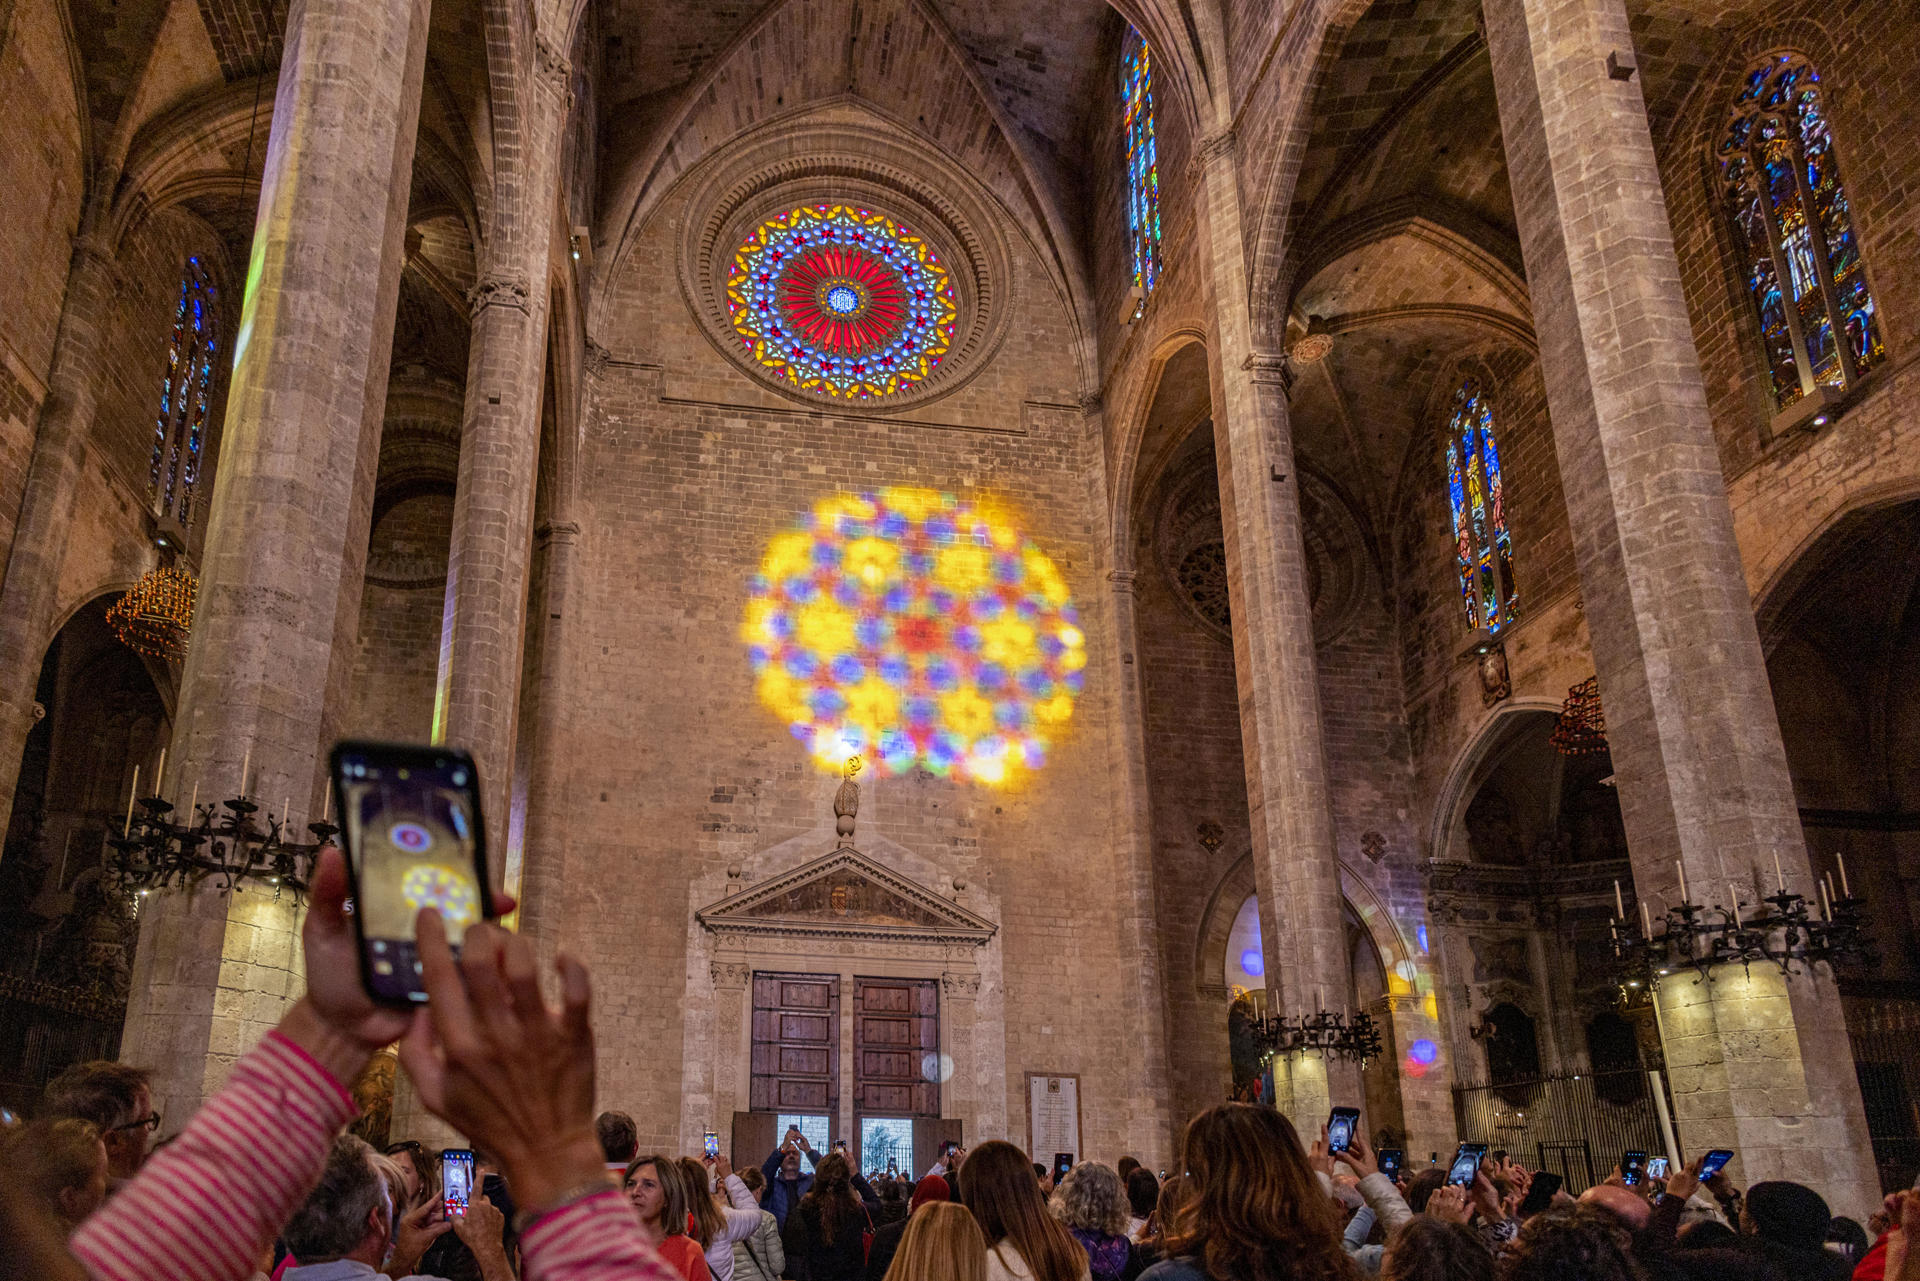 Cientos de personas se han congregado en la Catedral de Mallorca para asistir a la "Fiesta de la Luz", el singular espectáculo que ofrece el sol al entrar por el rosetón, formando un "ocho" que este otoño se ha abierto paso por instantes entre las nubes.- EFE/CATI CLADERA